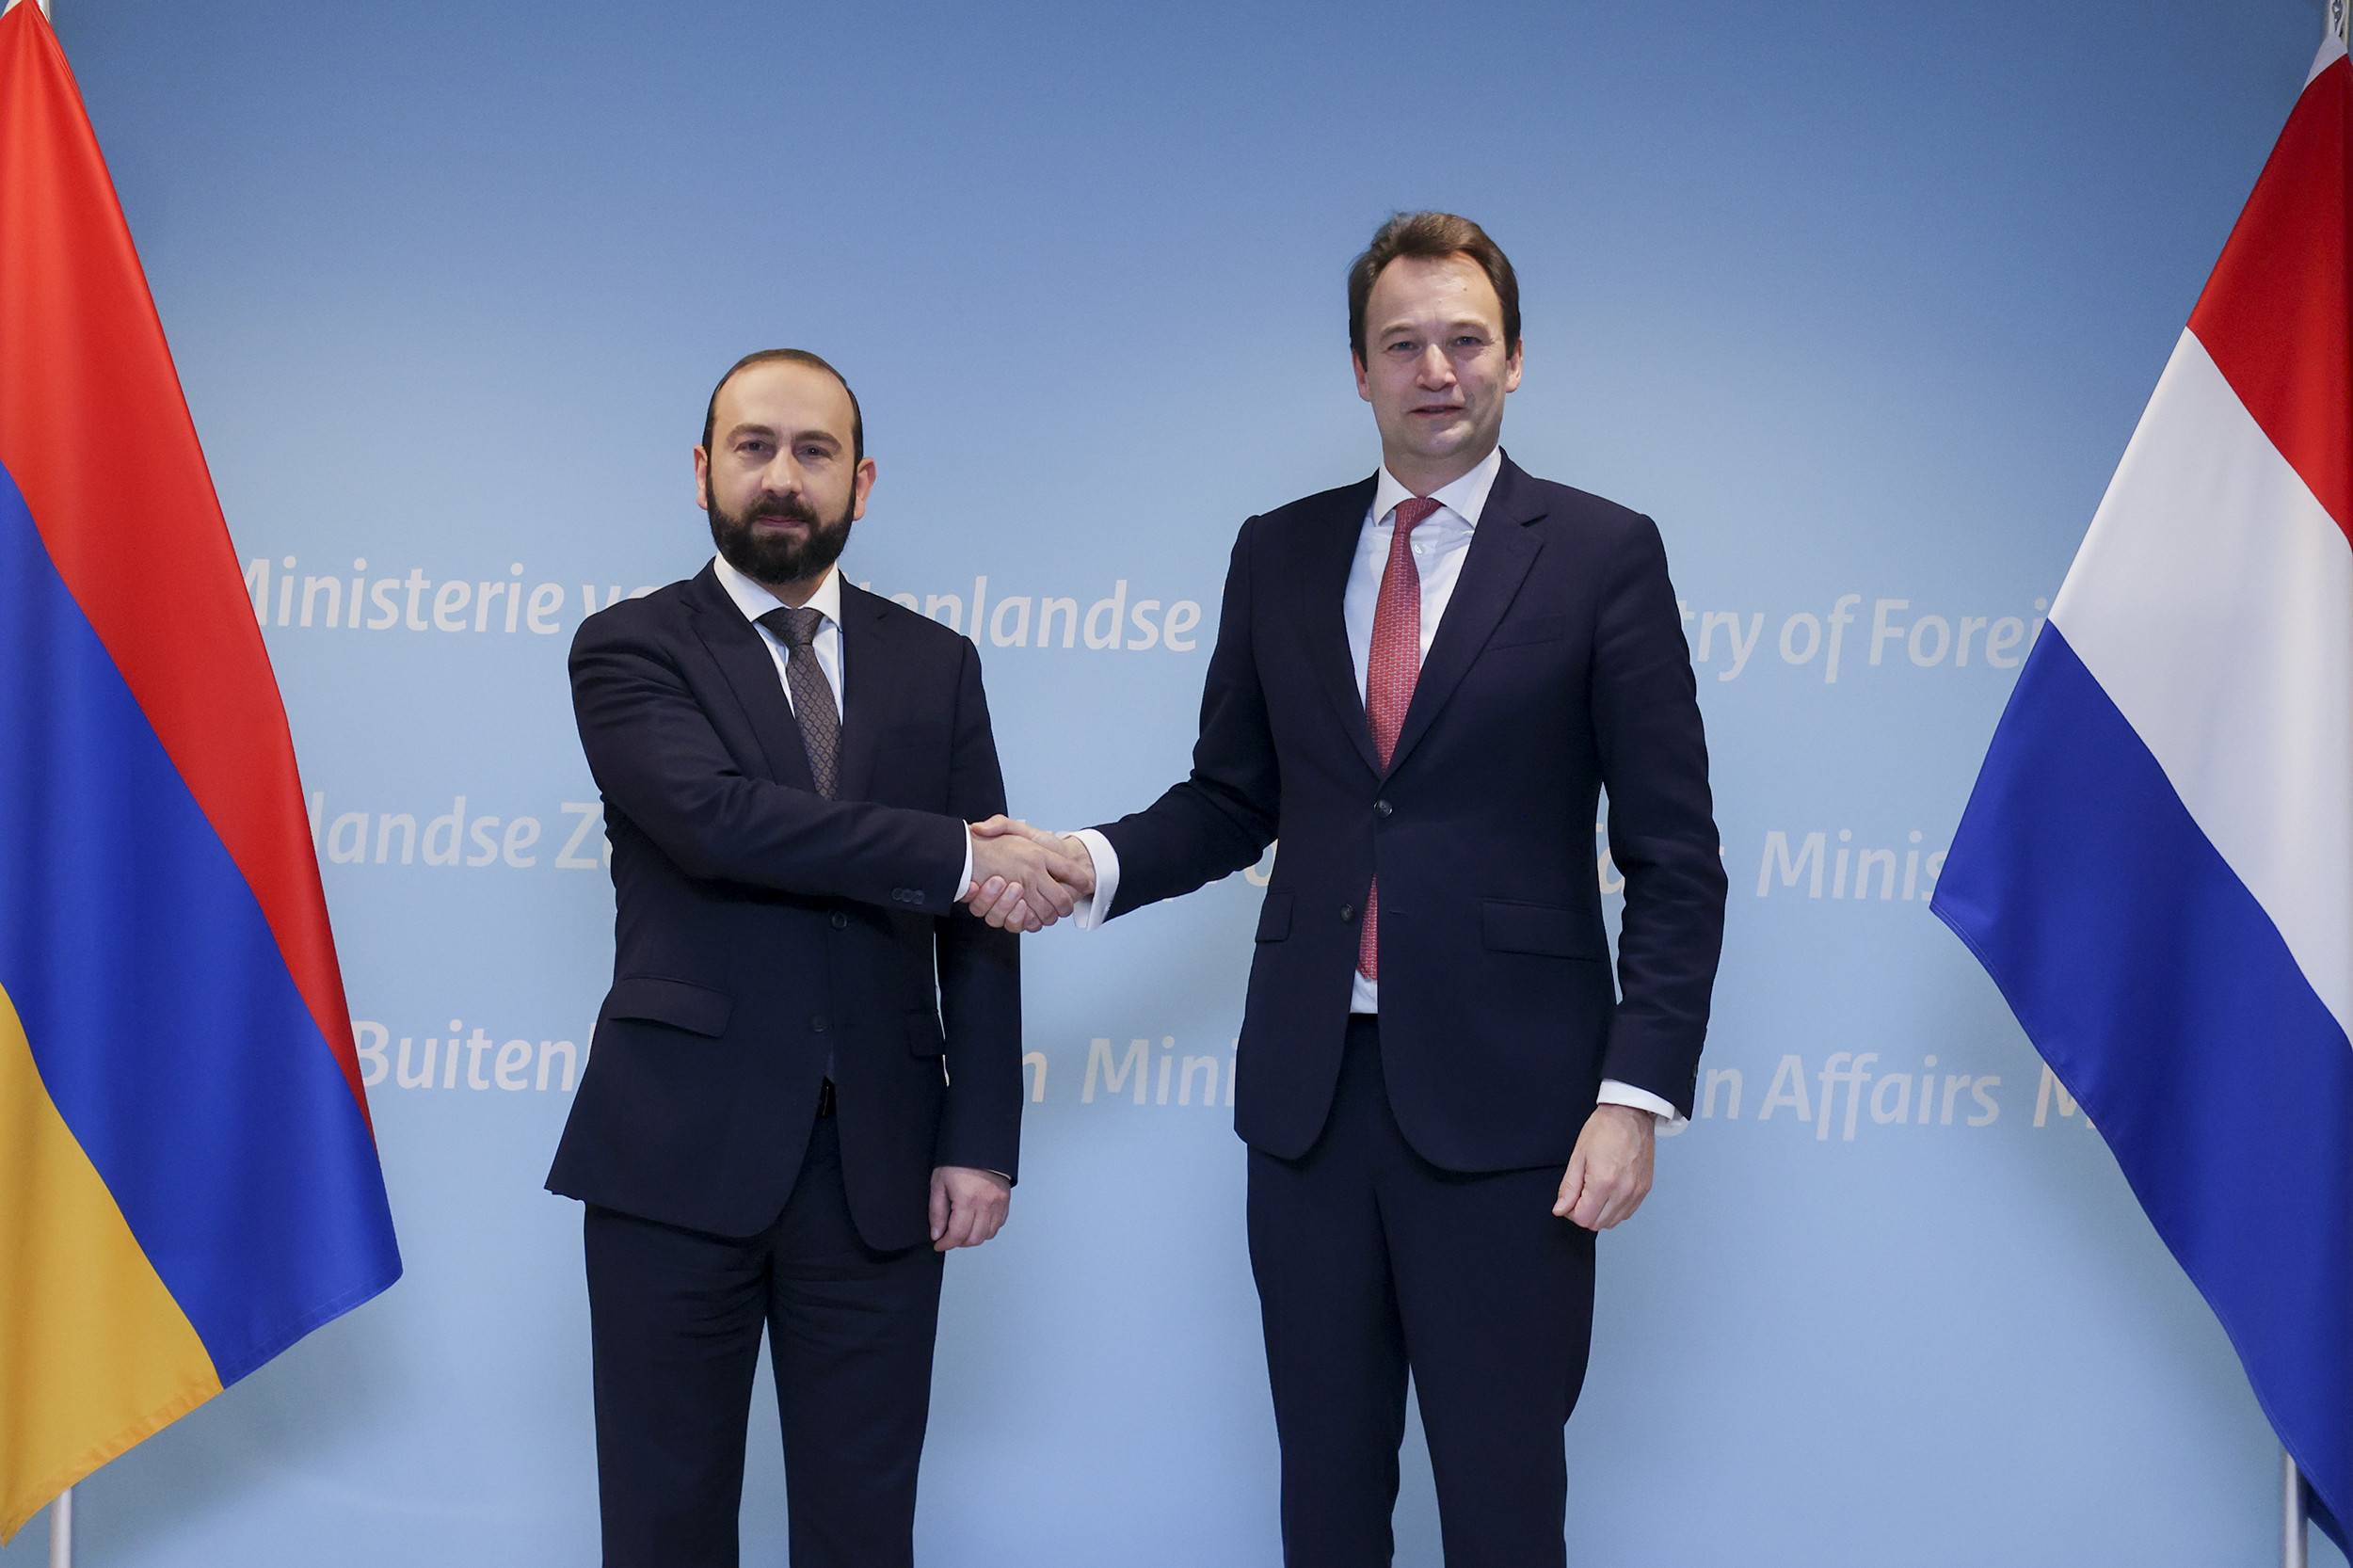 Арарат Мирзоянв Гааге встретился с министром внешней торговли и сотрудничества Королевства Нидерландов Джоффри фан Леувеном